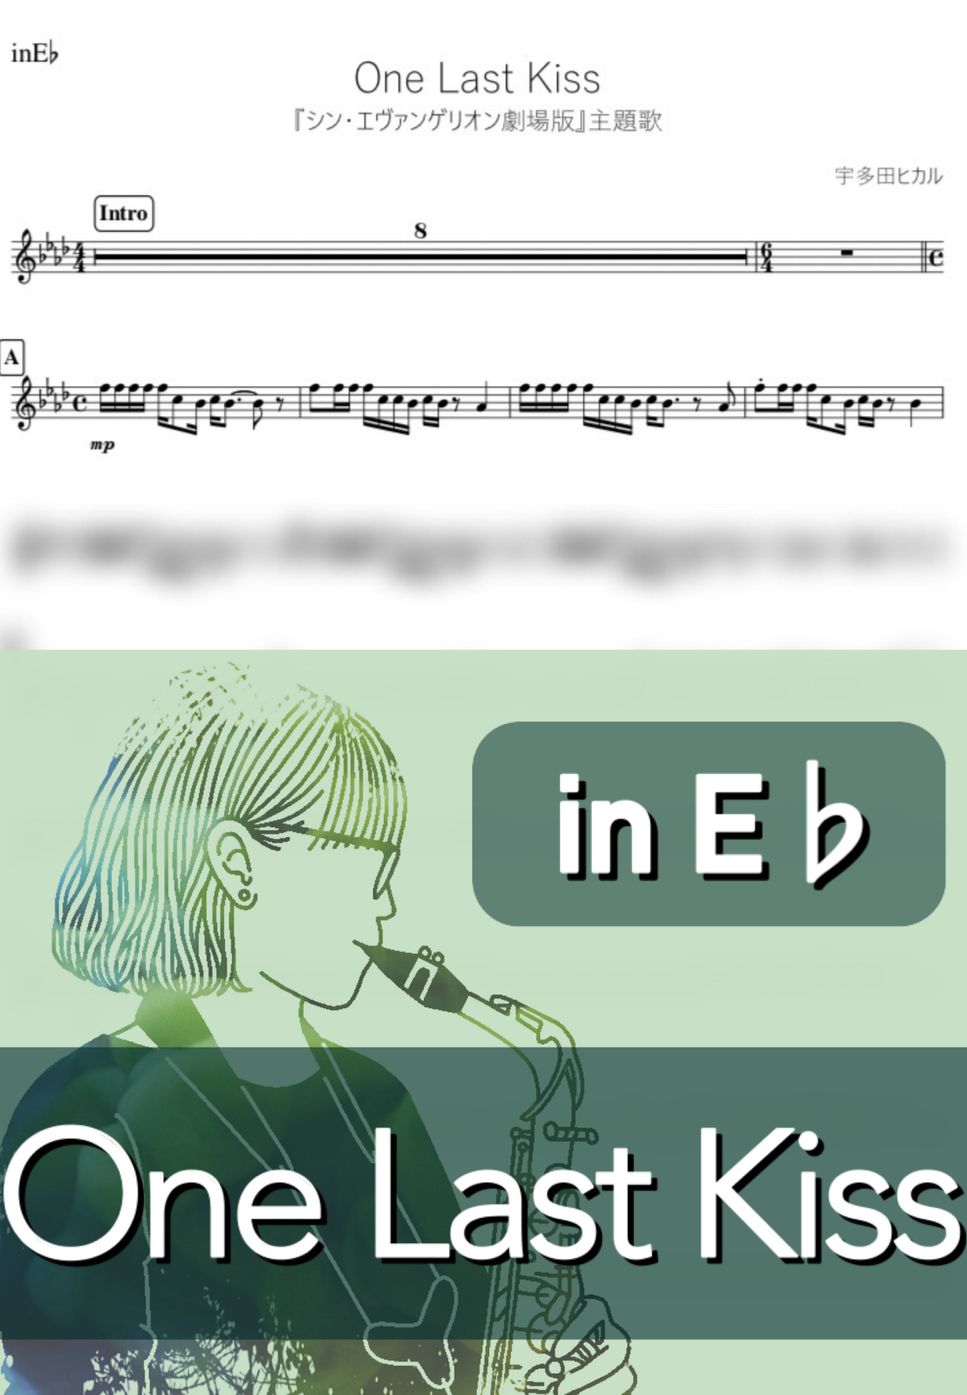 宇多田ヒカル - One Last Kiss (E♭) by kanamsuic